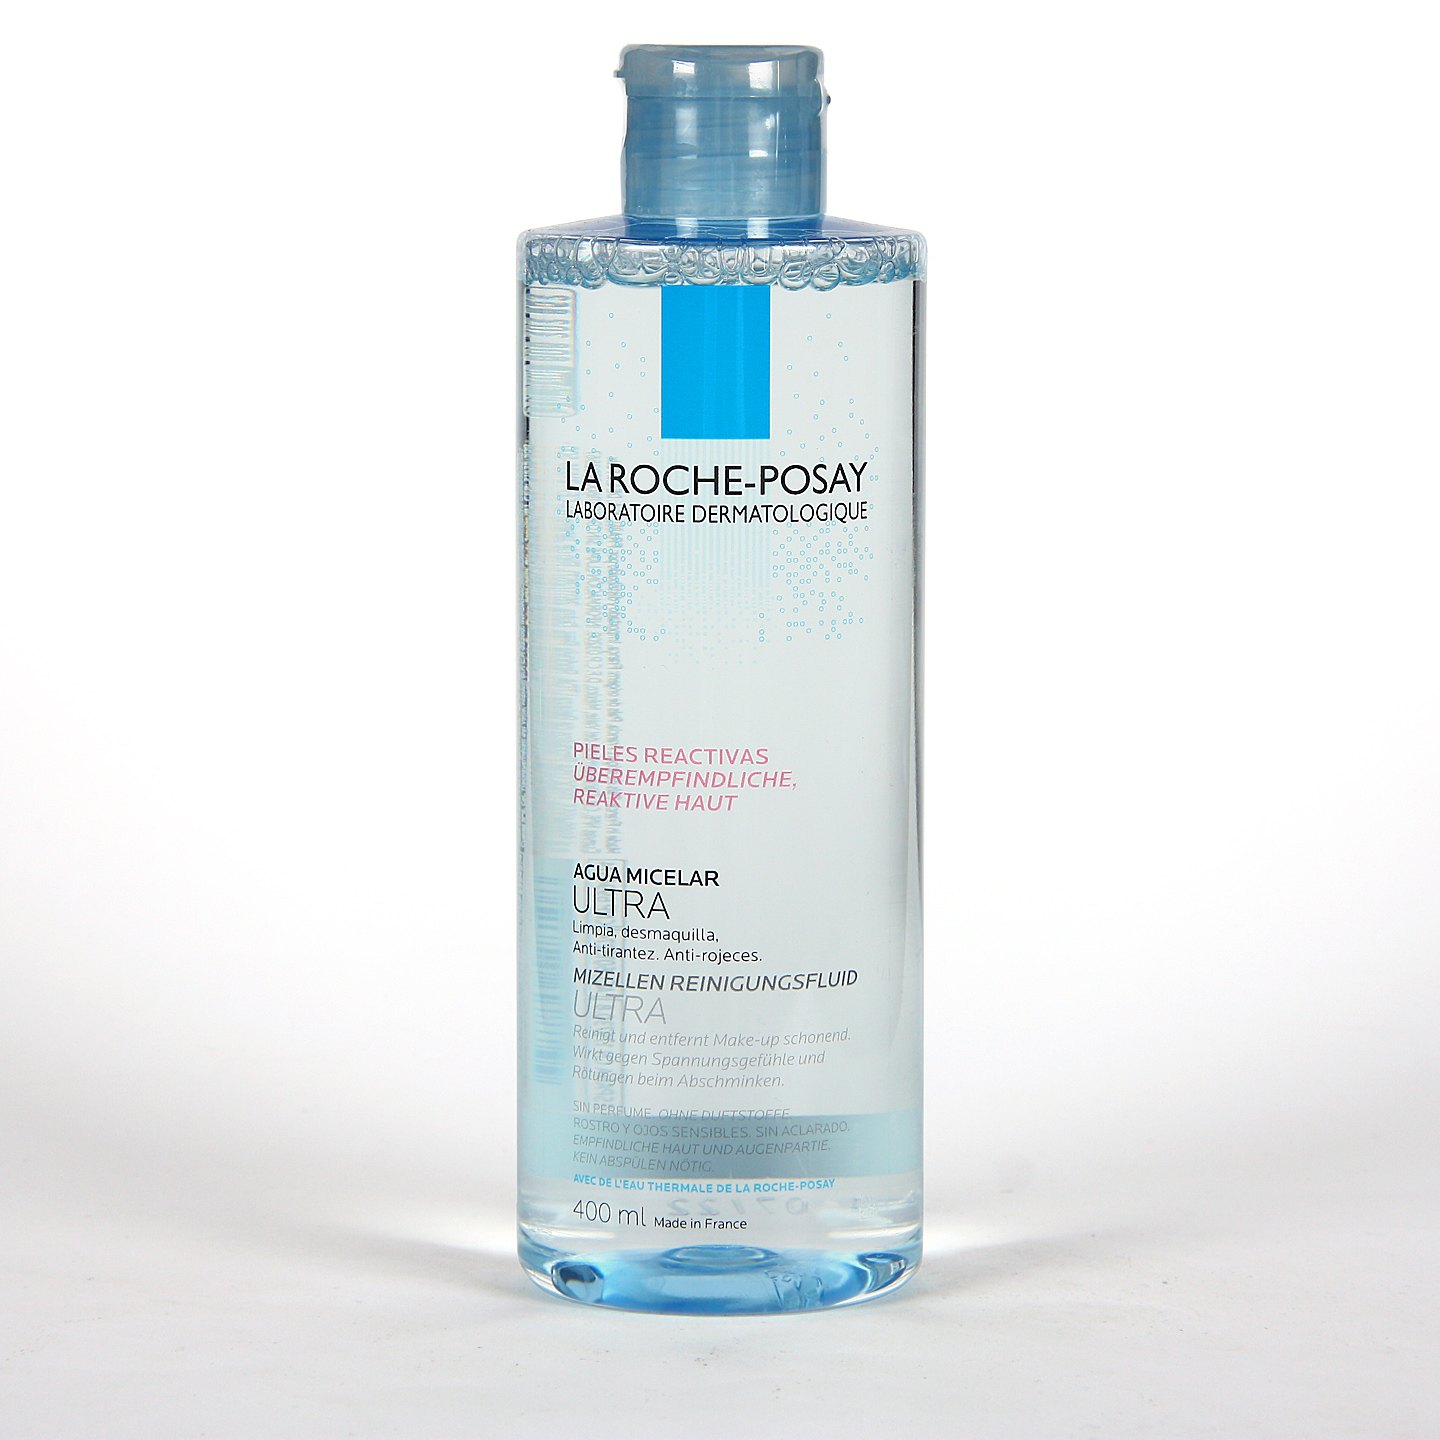 interior Limpia la habitación Admitir La Roche-Posay Agua Micelar Ultra Piel Reactiva 400 ml | Farmacia Jiménez